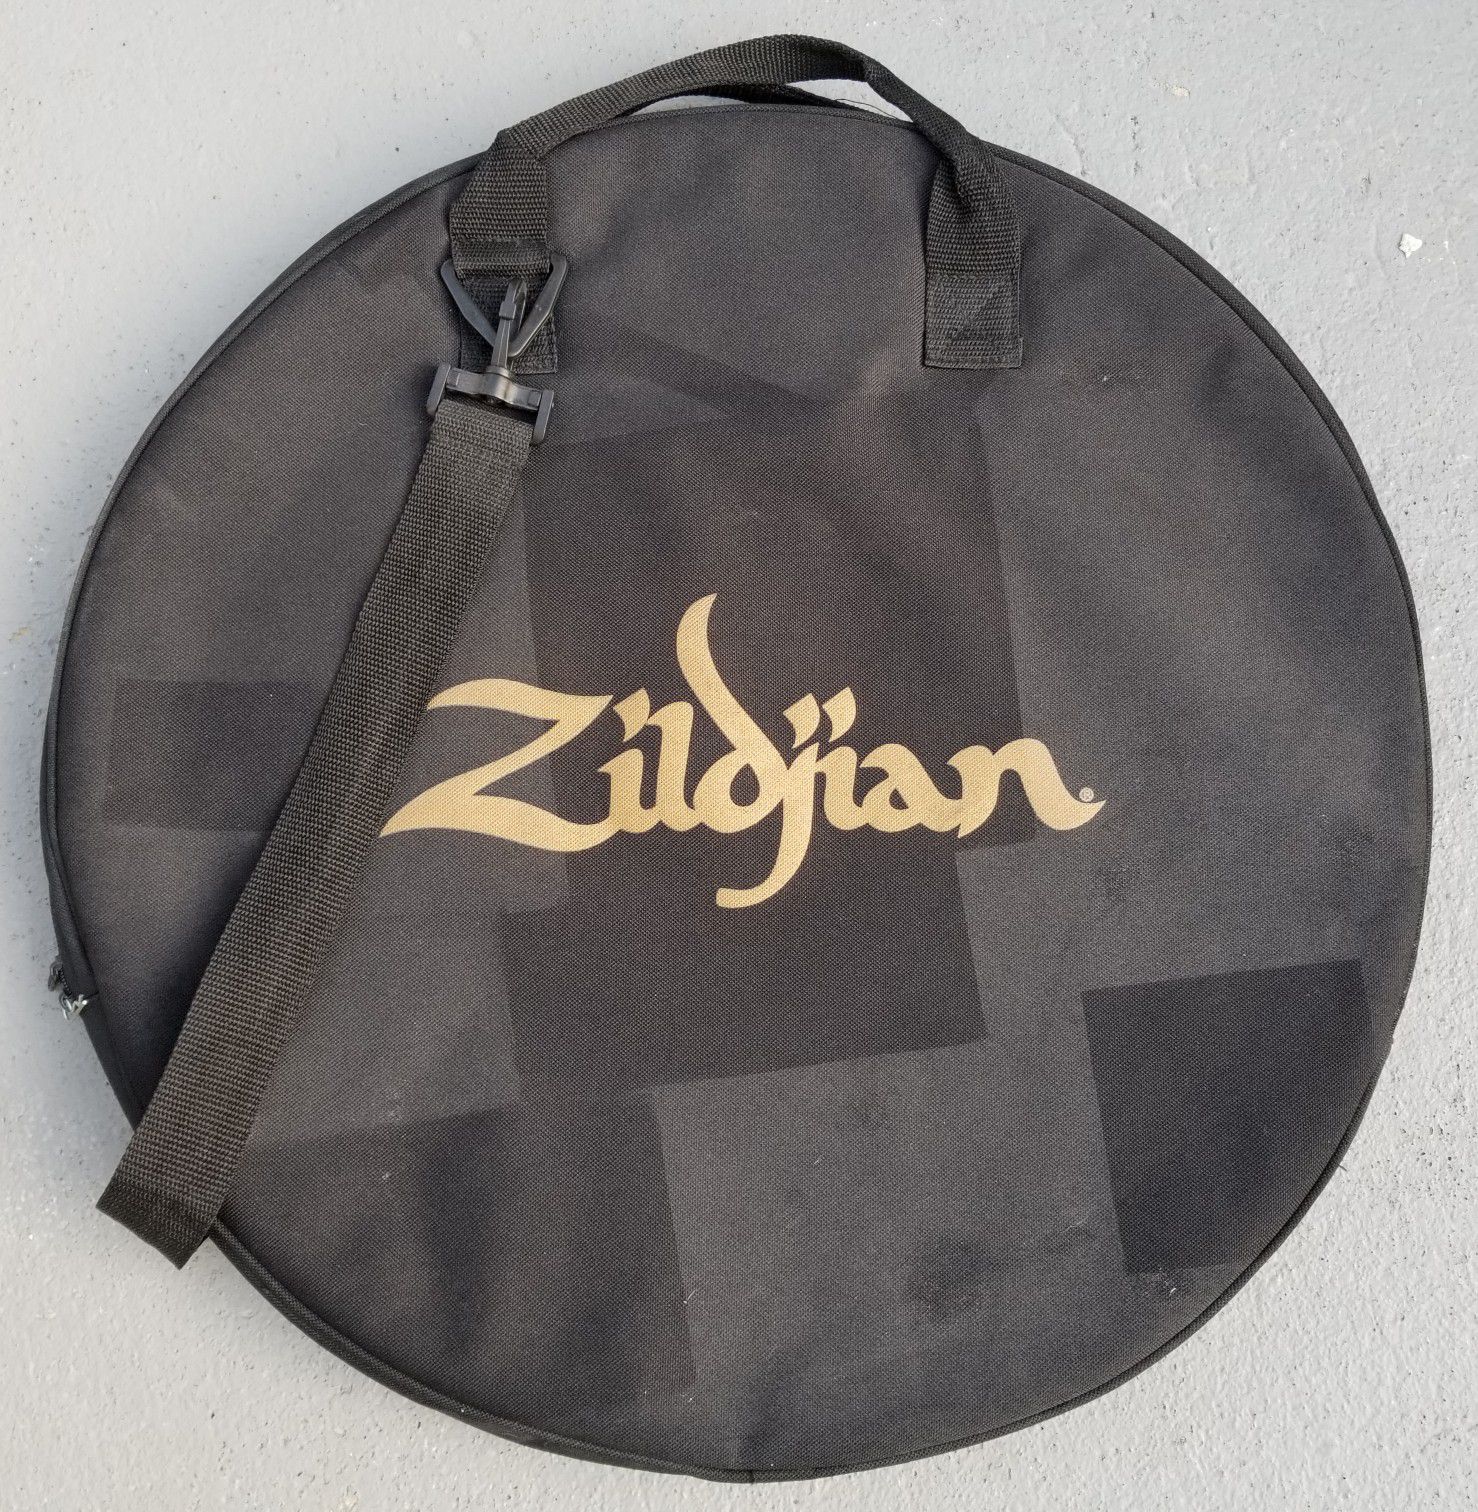 Zildjian Cymbals Bag